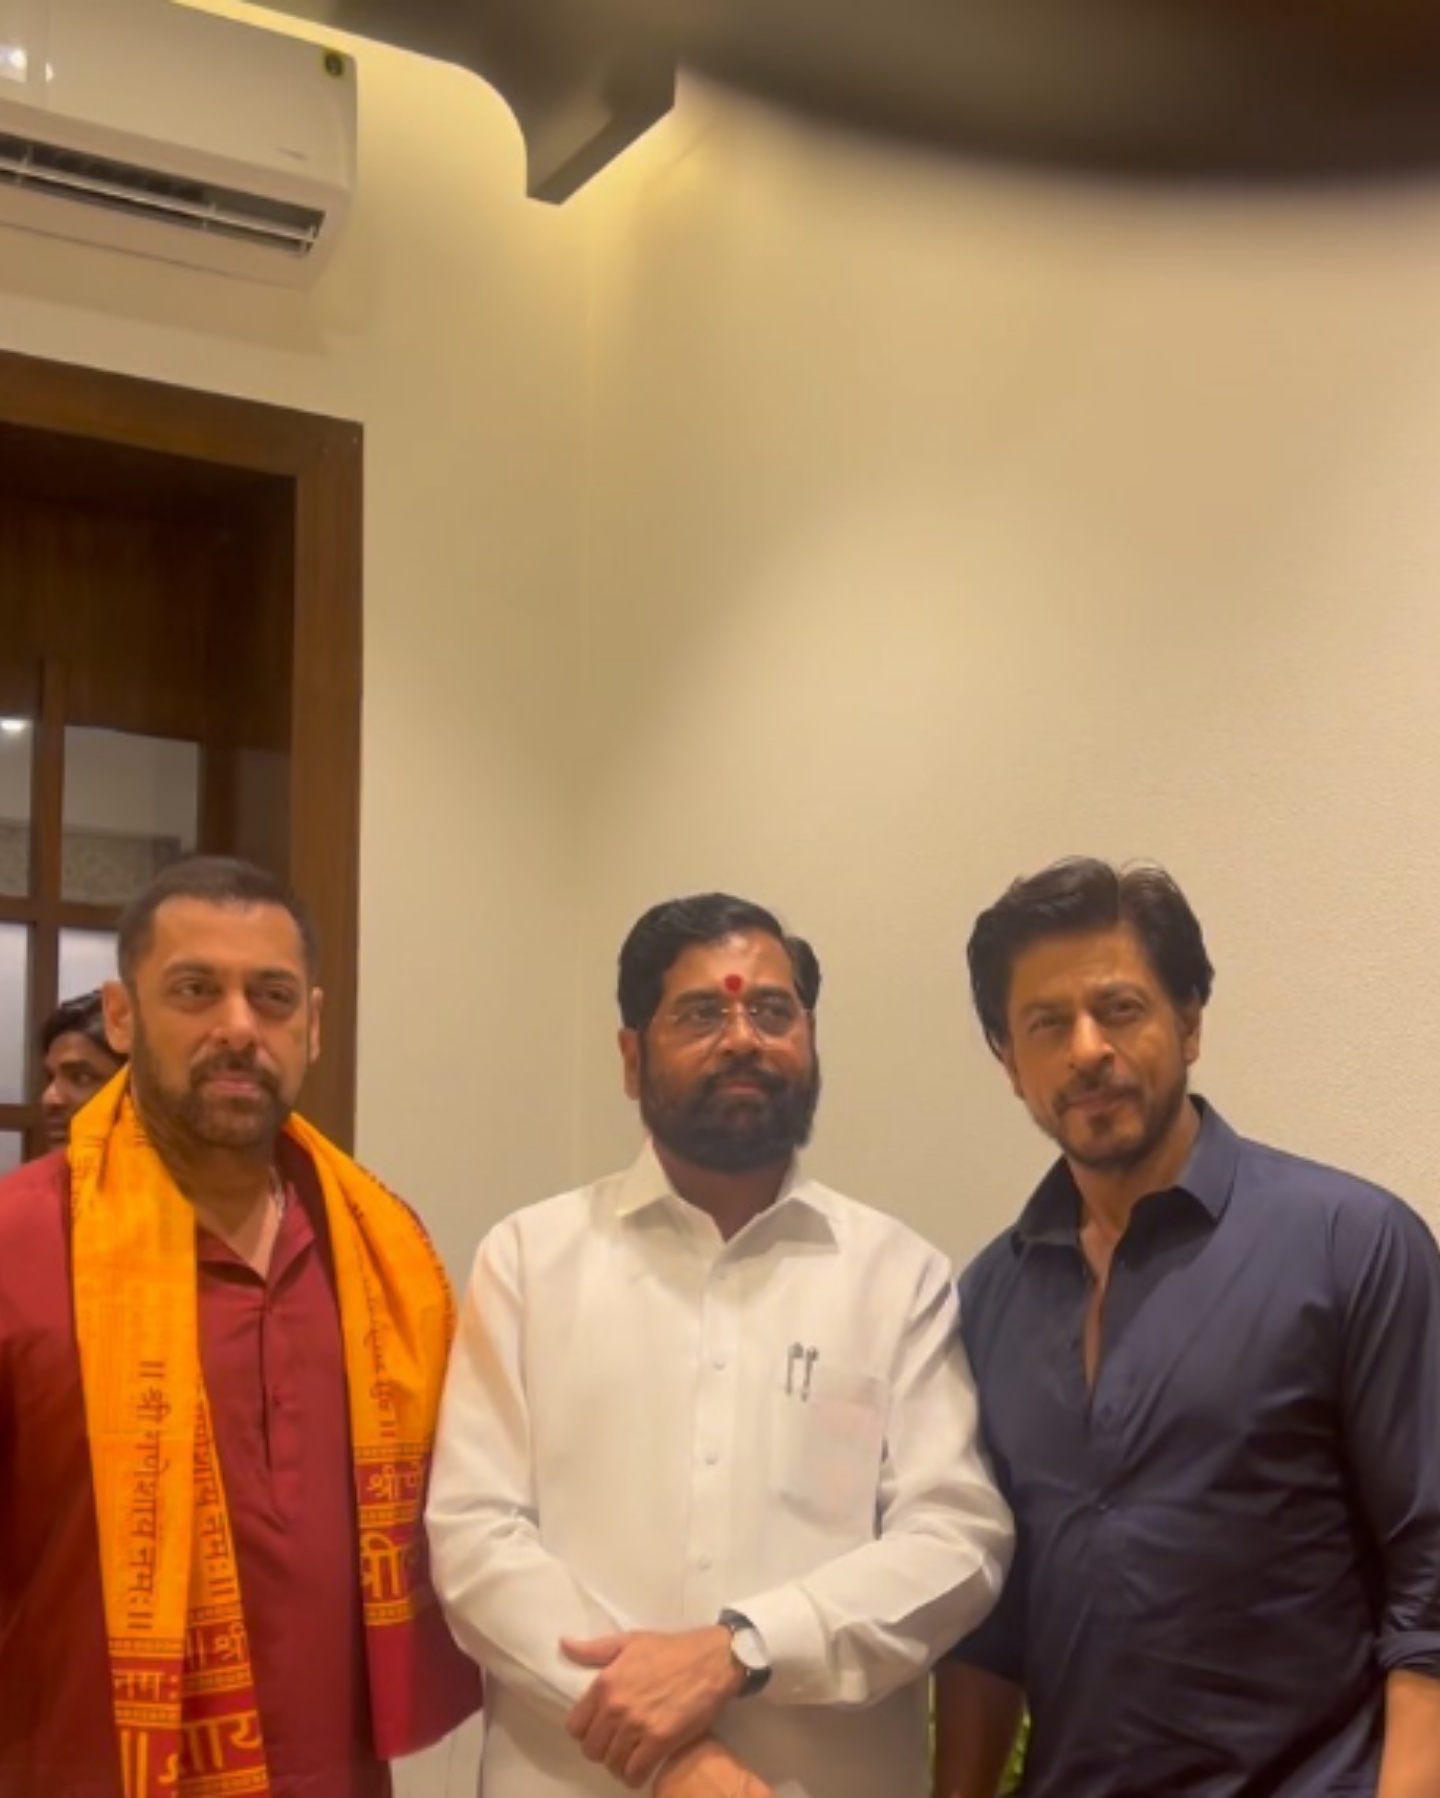 Salman Khan and Shah Rukh Khan with Maharashtra CM Eknath Shinde